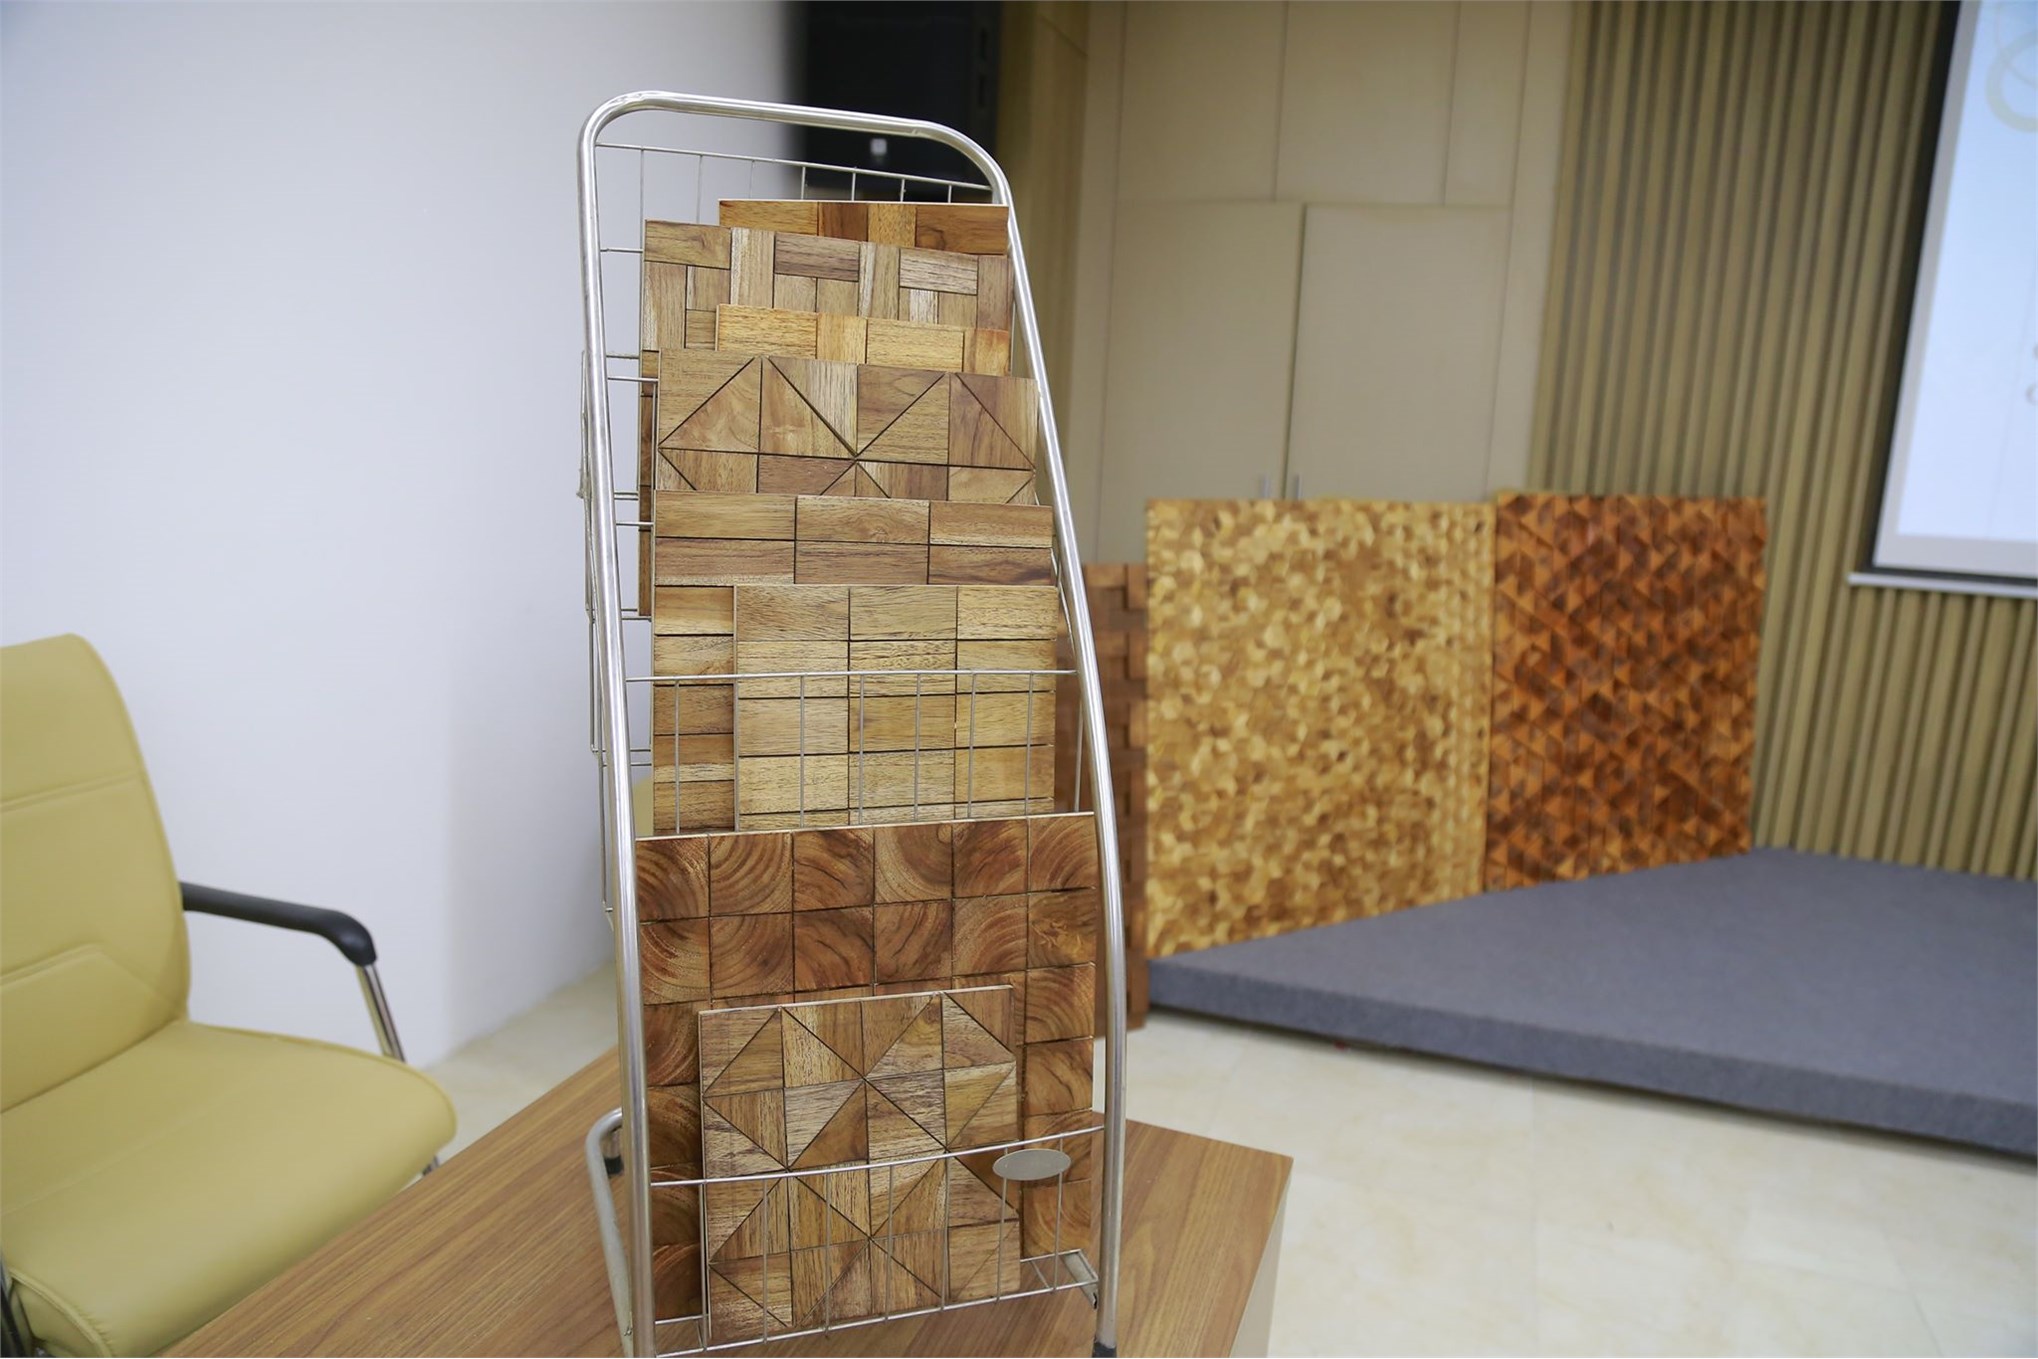 Nghiệm thu cấp cơ sở đề tài NCKH TP Hà Nội: “Nghiên cứu ứng dụng công nghệ sản xuất tấm trang trí 3D từ gỗ rừng trồng”